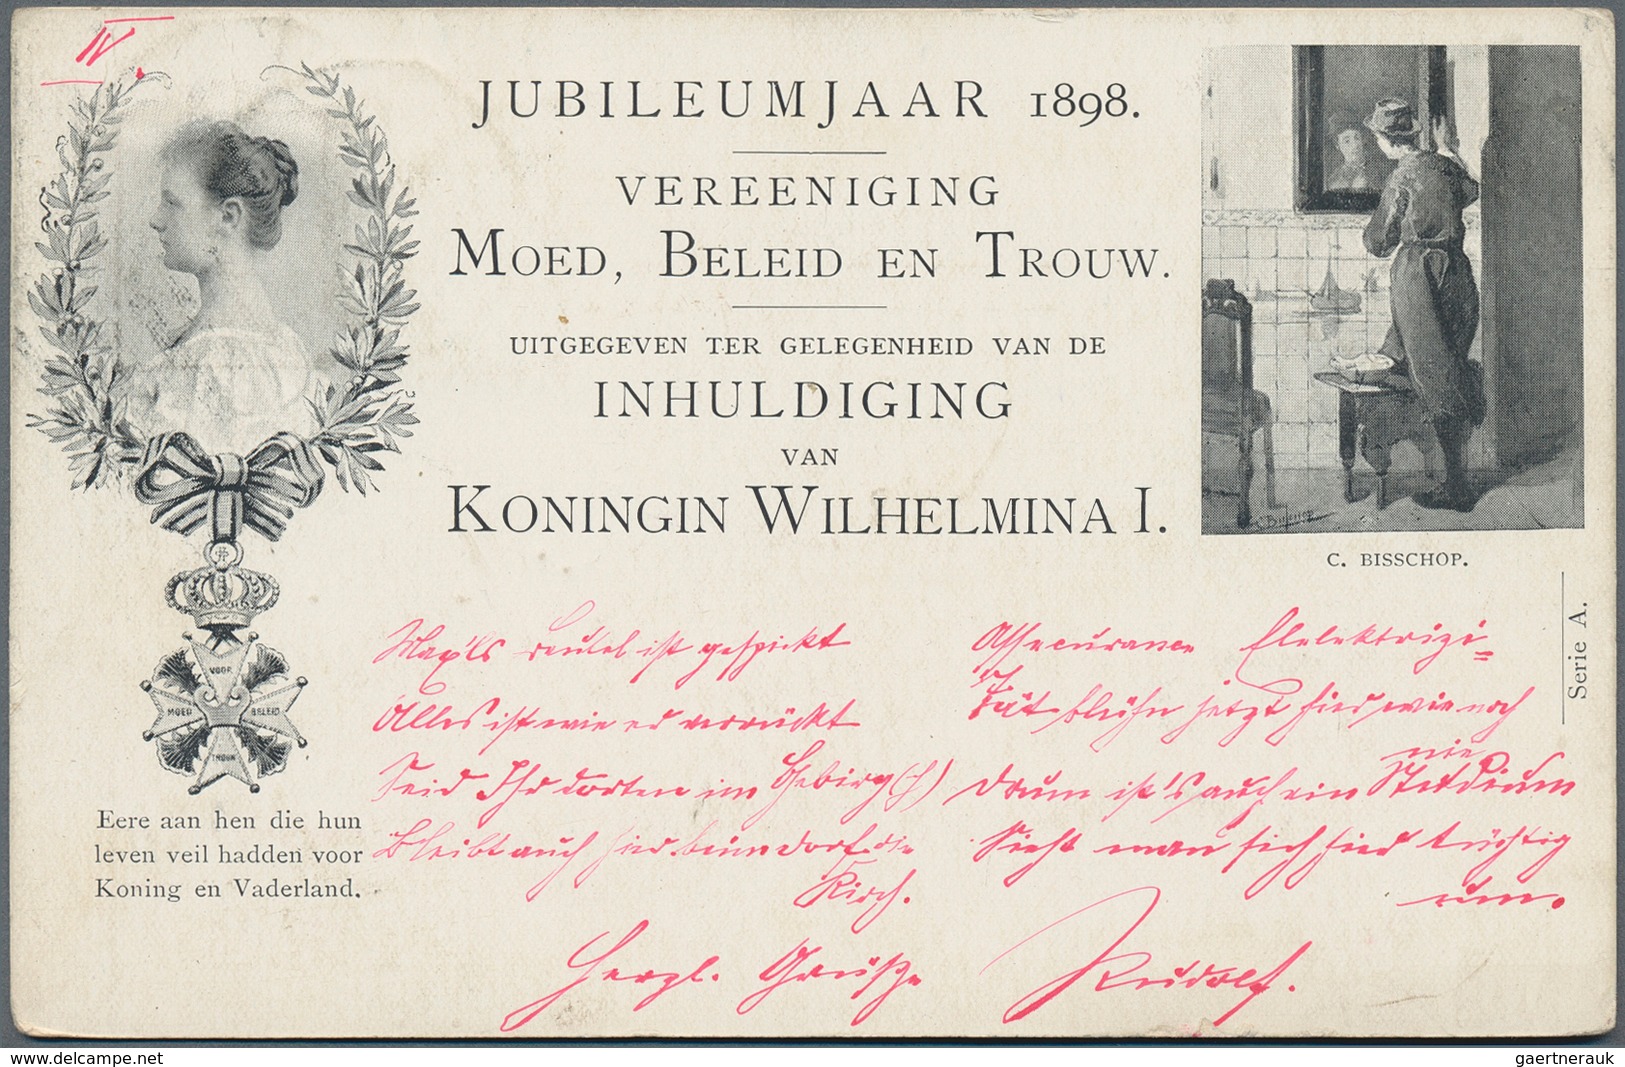 Niederlande - Ganzsachen: 1871/1980, reichliche Sammlung in 5 Briefalben mit Aerogrammen, Umschlägen